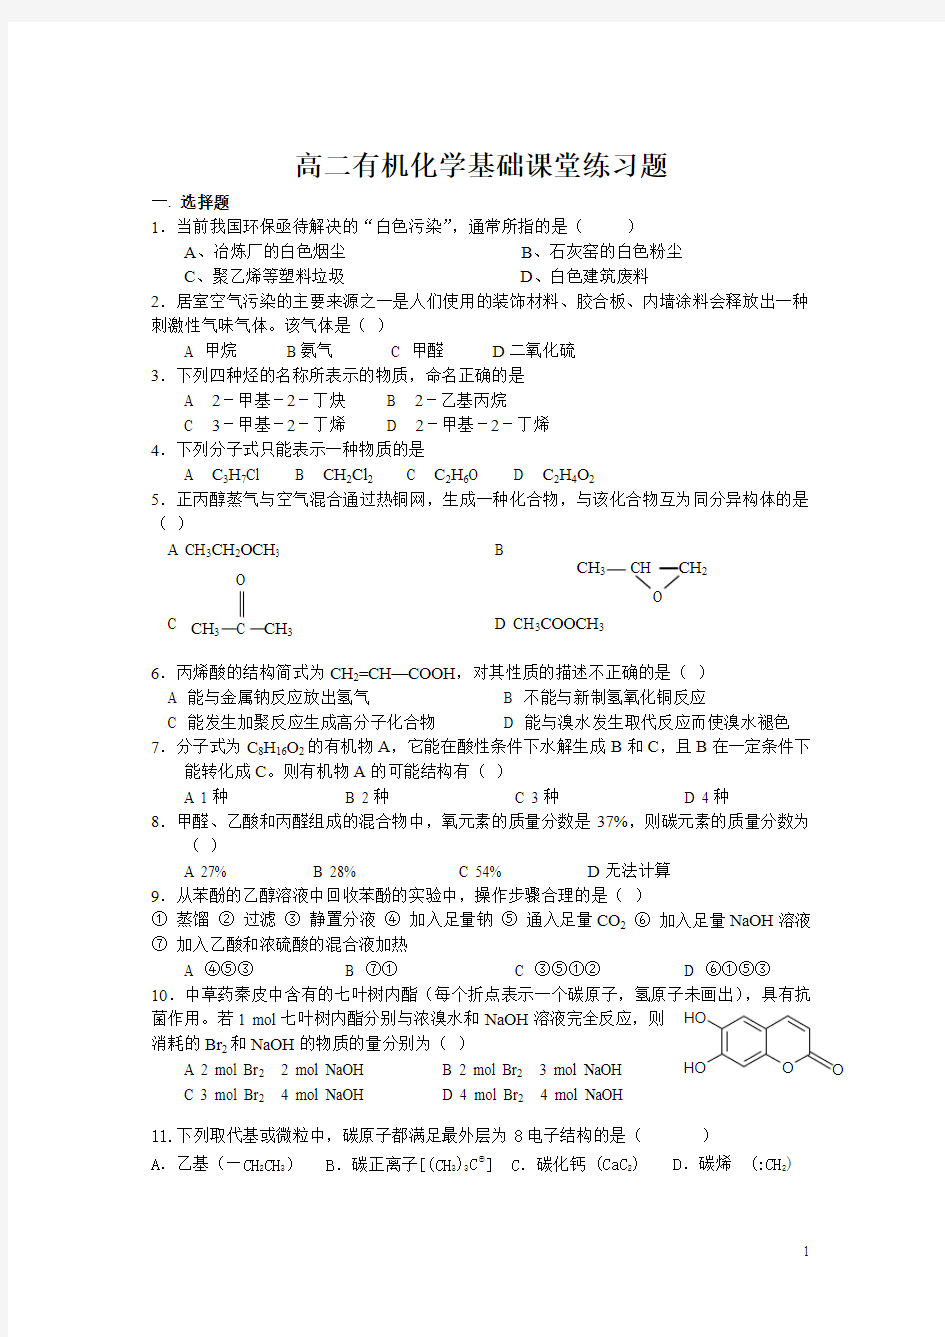 高二有机化学基础烃的衍生物课堂练习题[1]